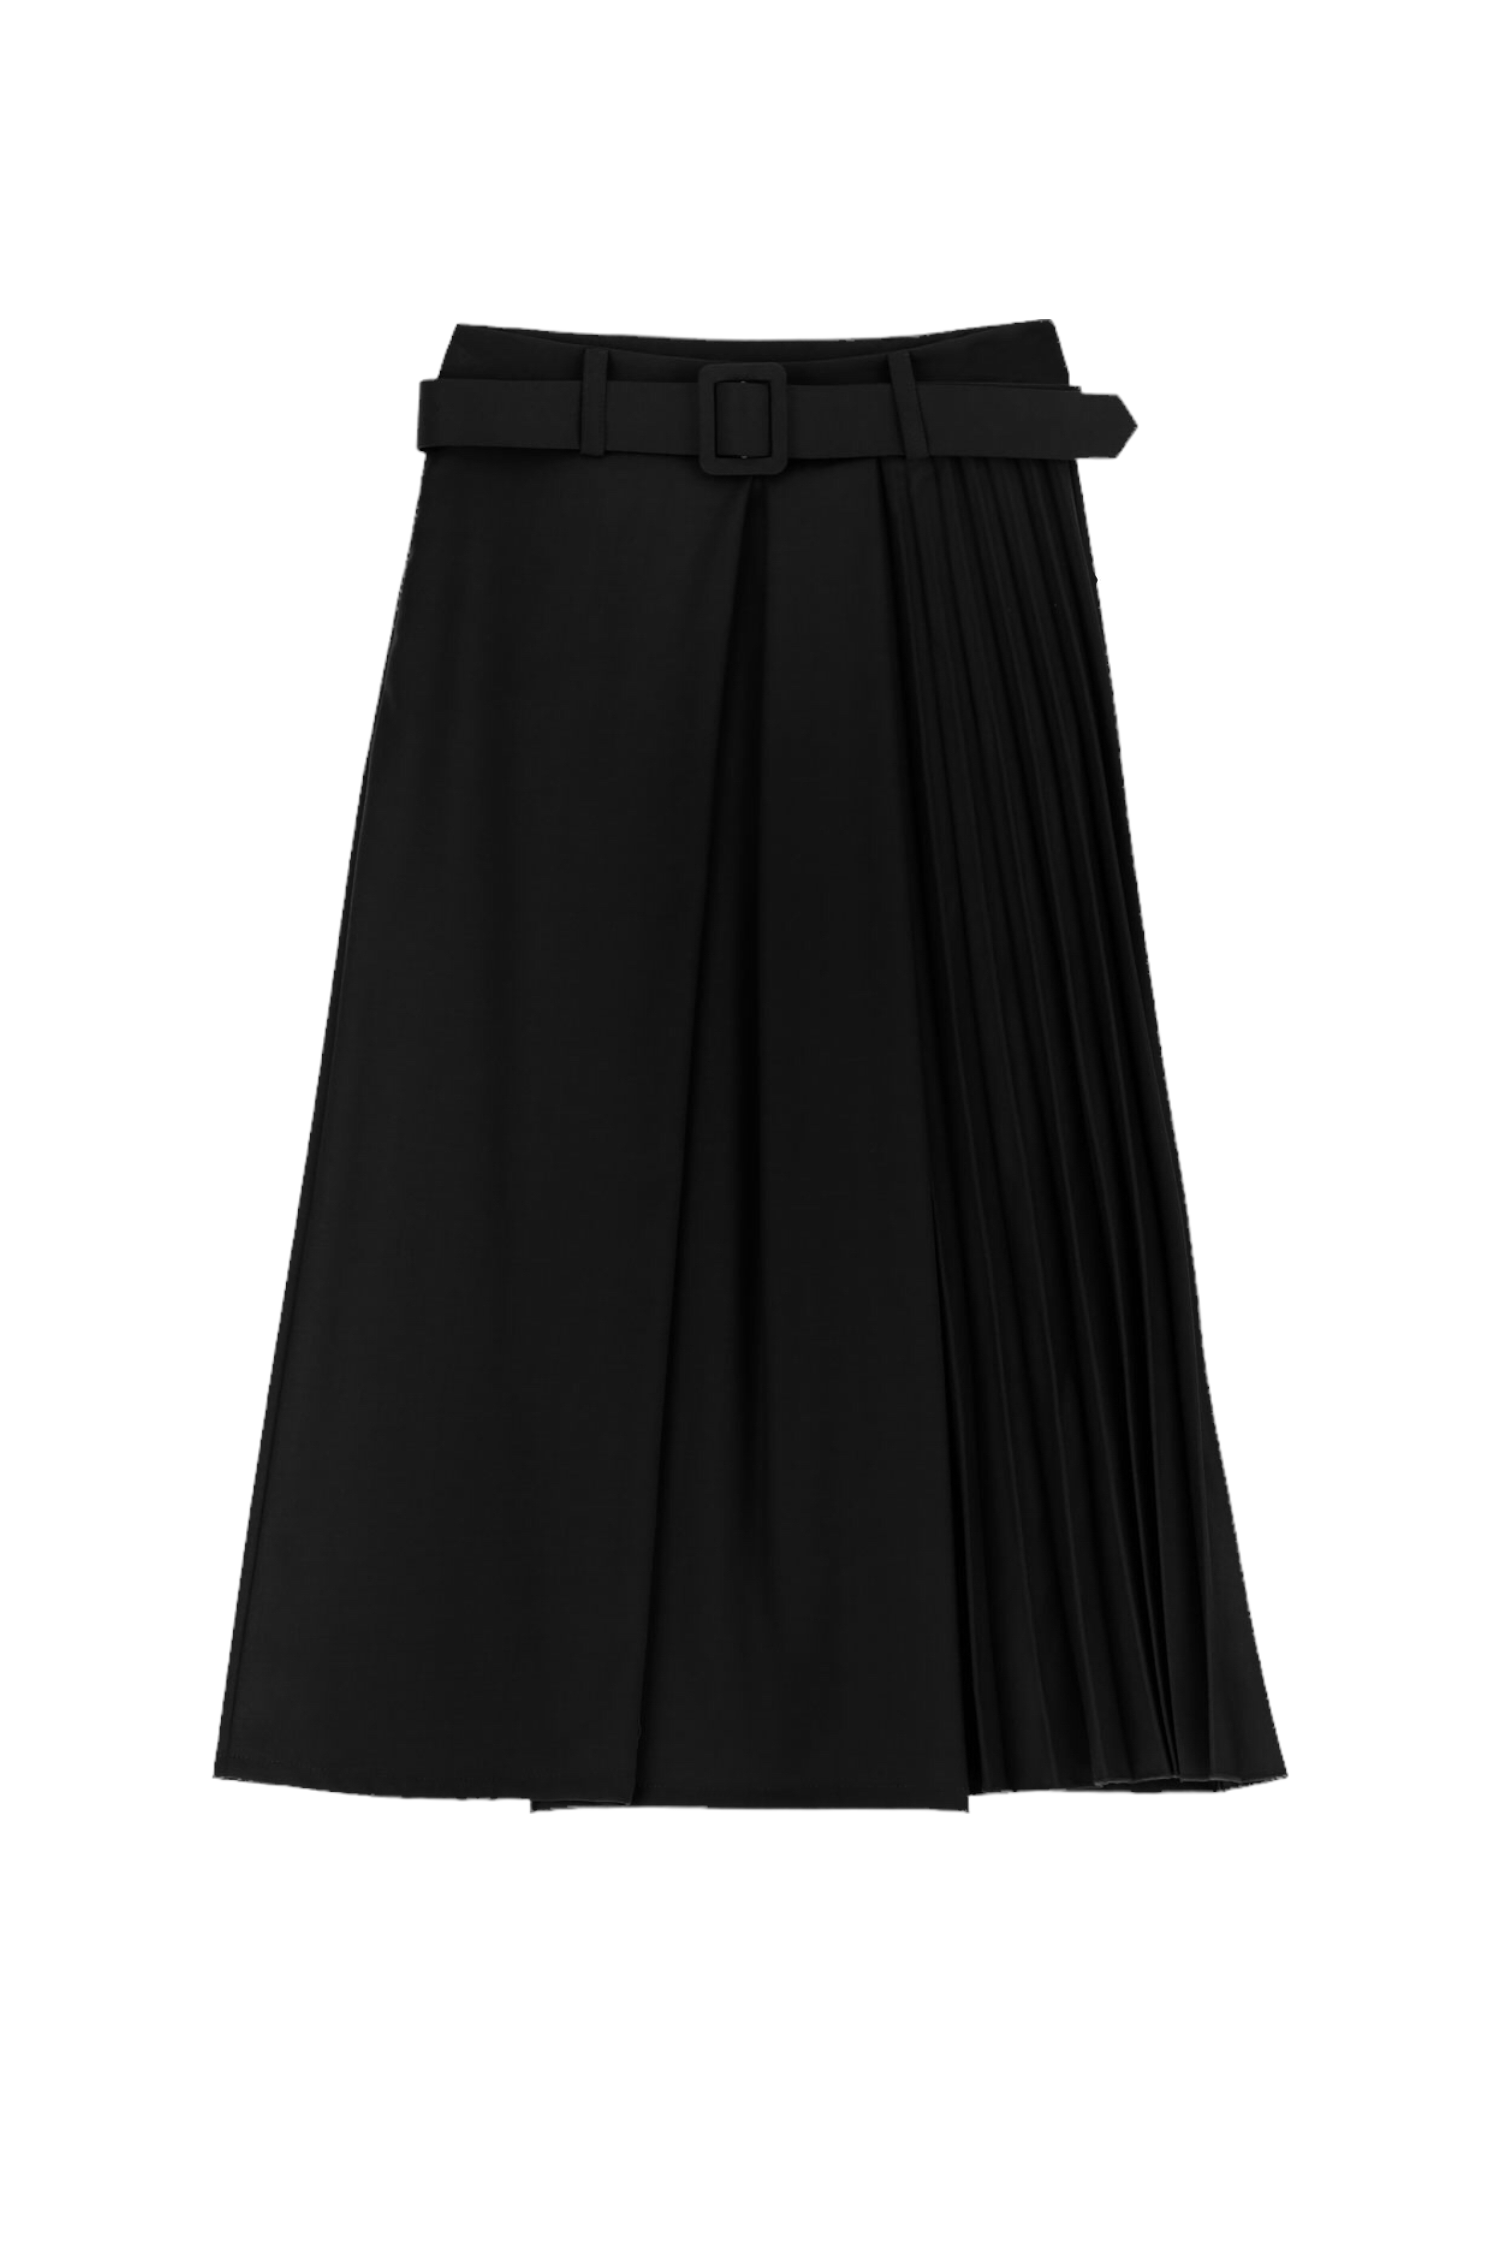 Dixie black skirt